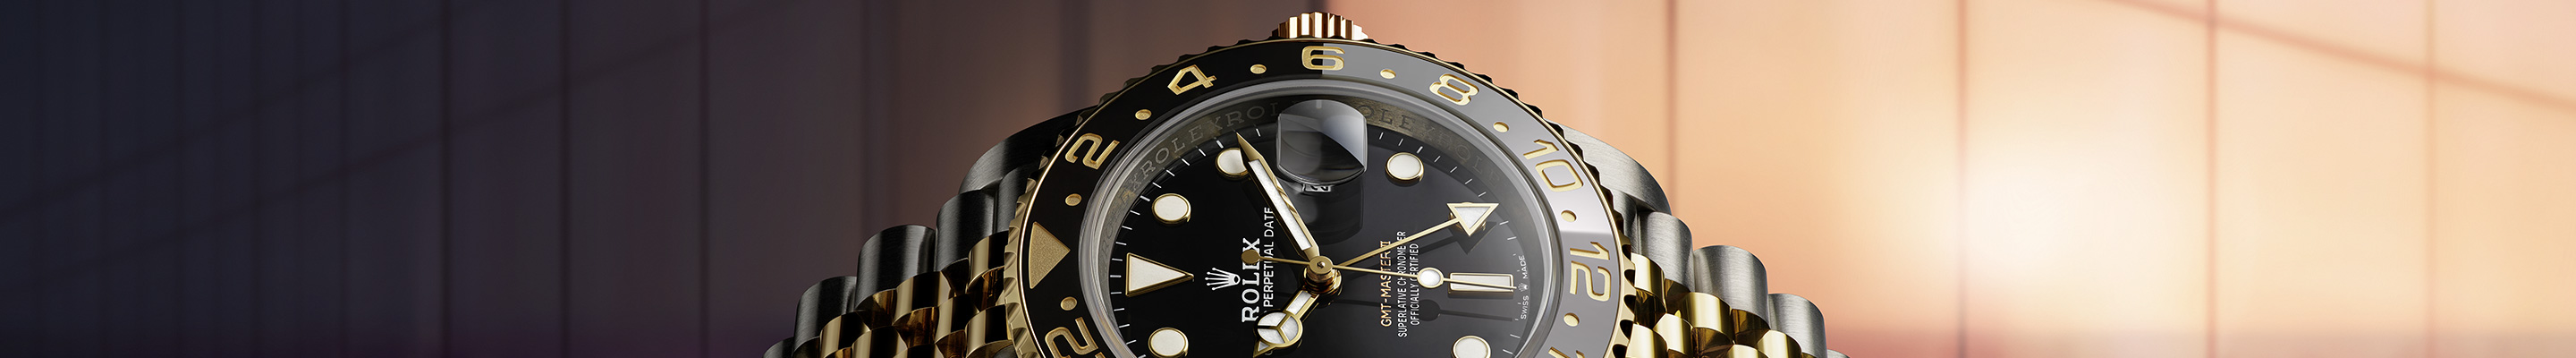 Rolex GMT-Master II Saatleri